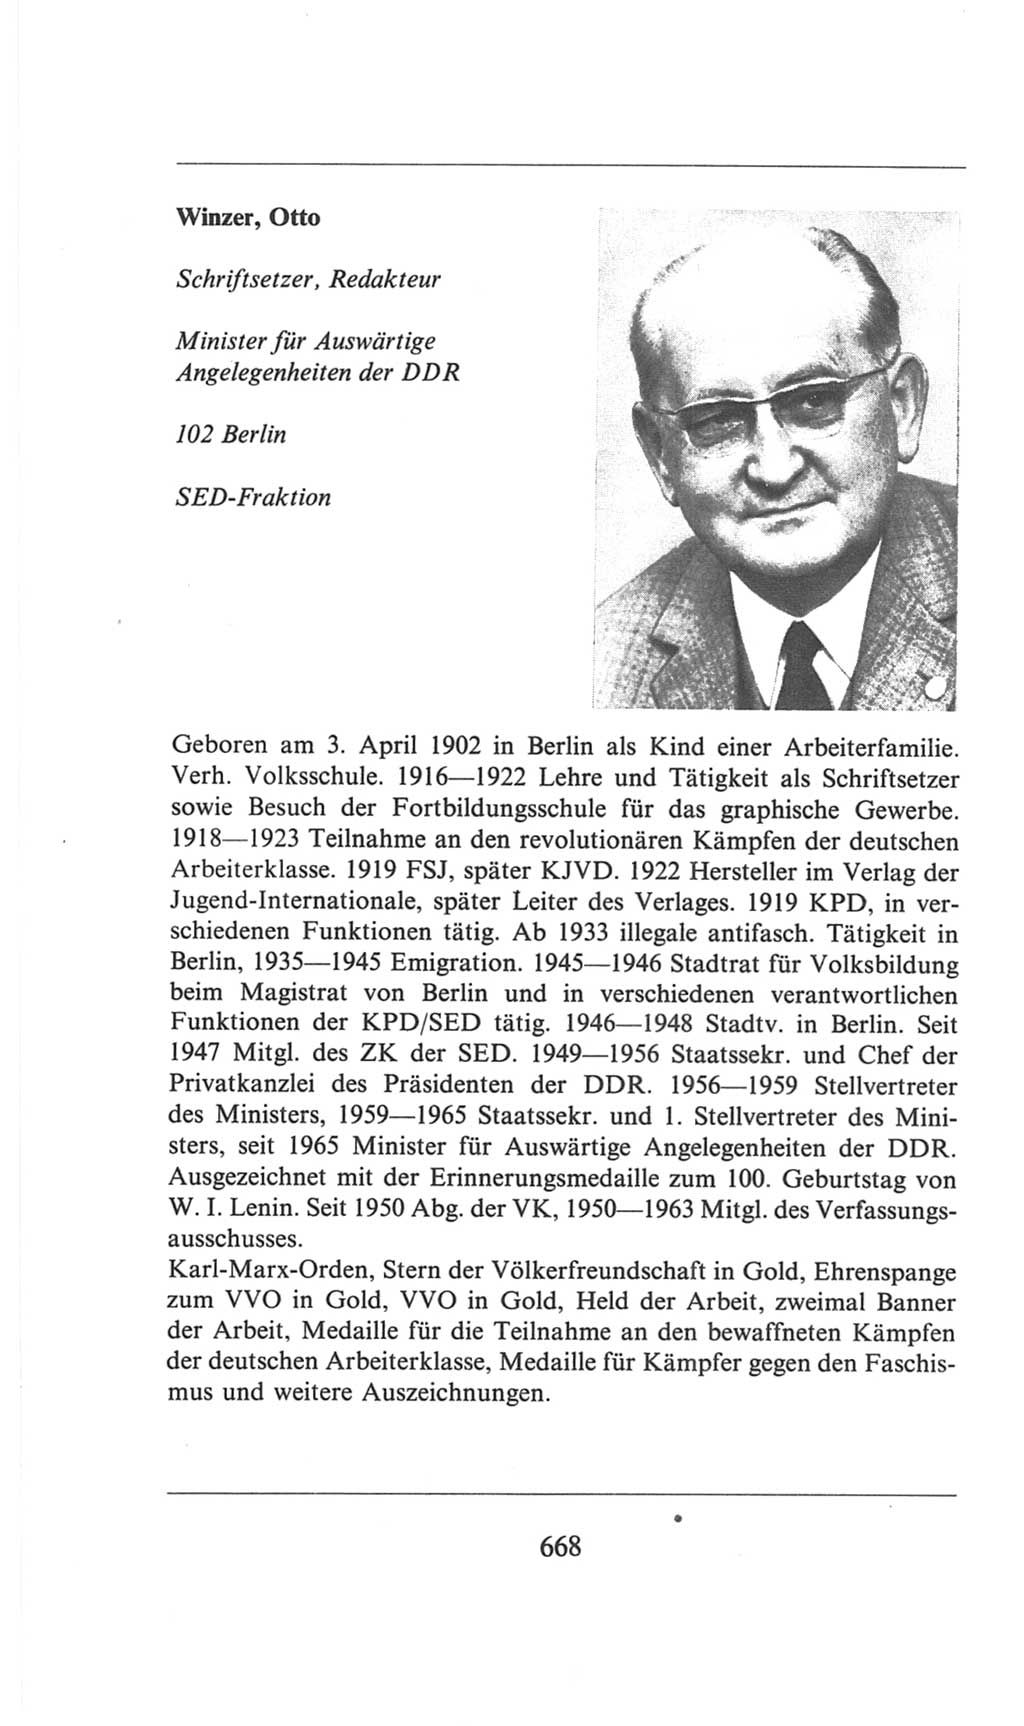 Volkskammer (VK) der Deutschen Demokratischen Republik (DDR), 6. Wahlperiode 1971-1976, Seite 668 (VK. DDR 6. WP. 1971-1976, S. 668)